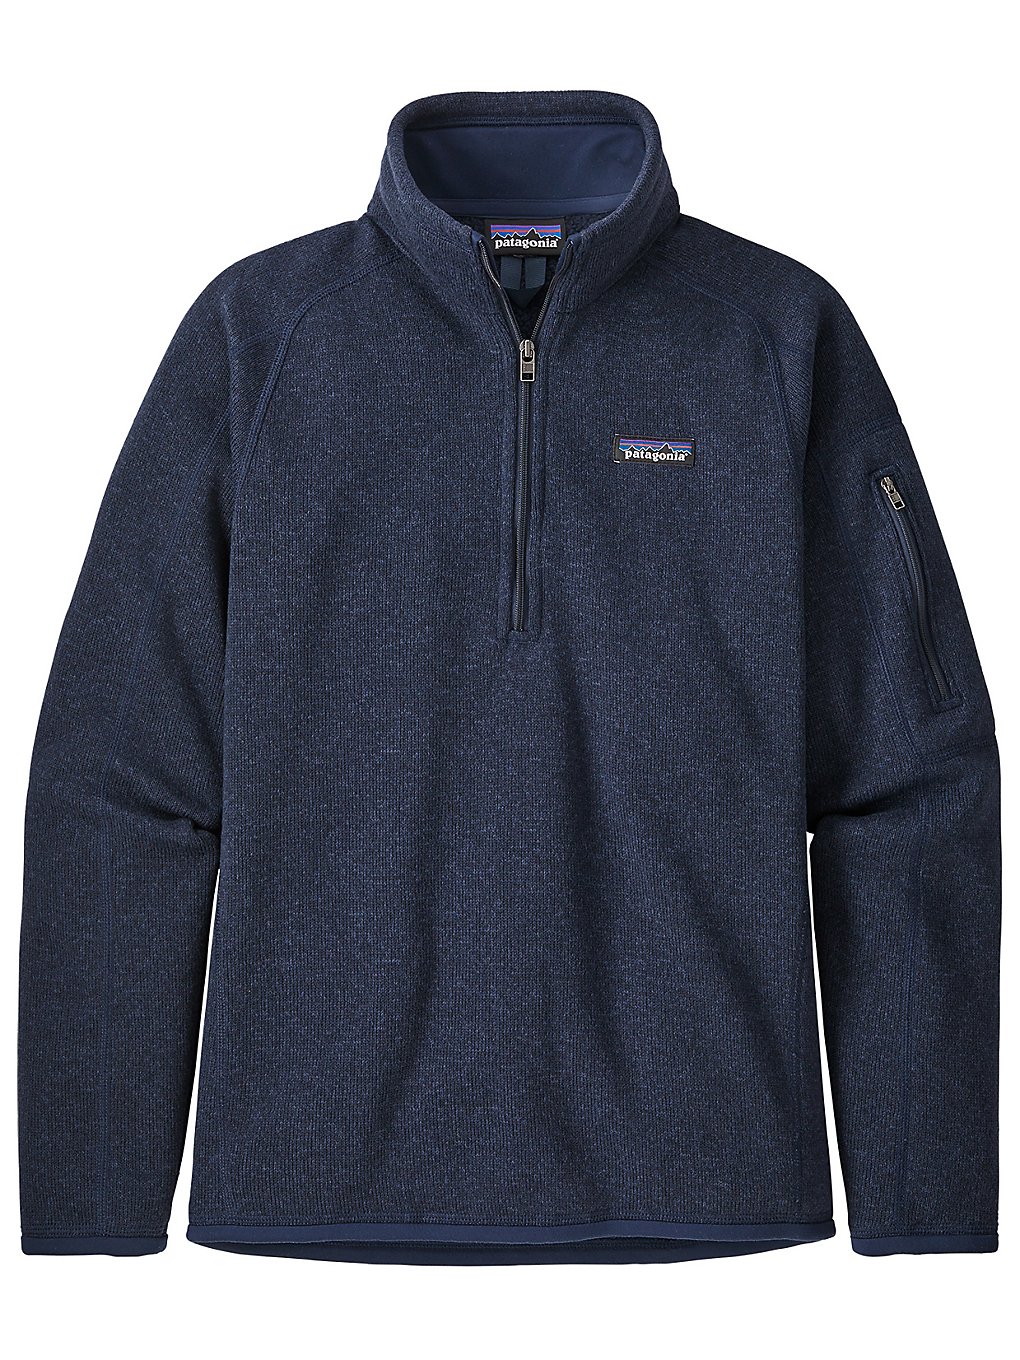 Patagonia Better Sweater 1/4 Zip Jacke neo navy kaufen